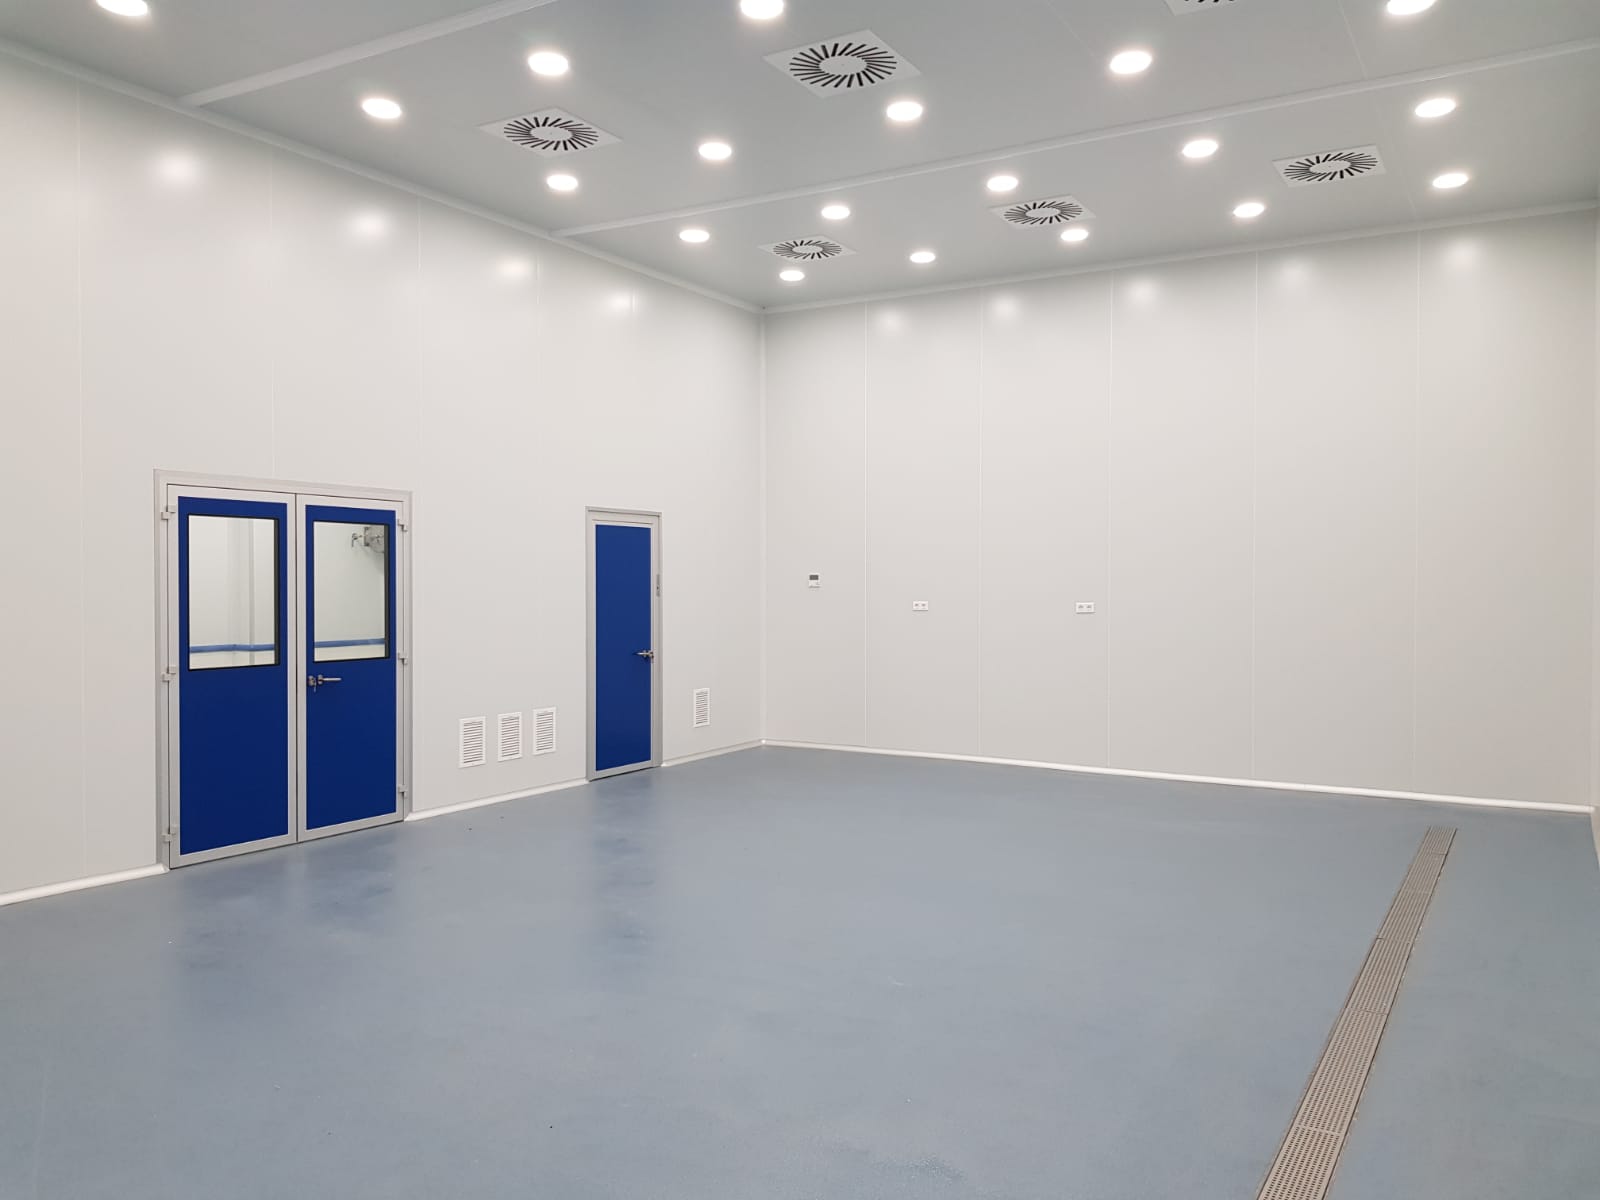 Sala ambiente controlado para reactores diseñada y construida por Cleanroom System SRL